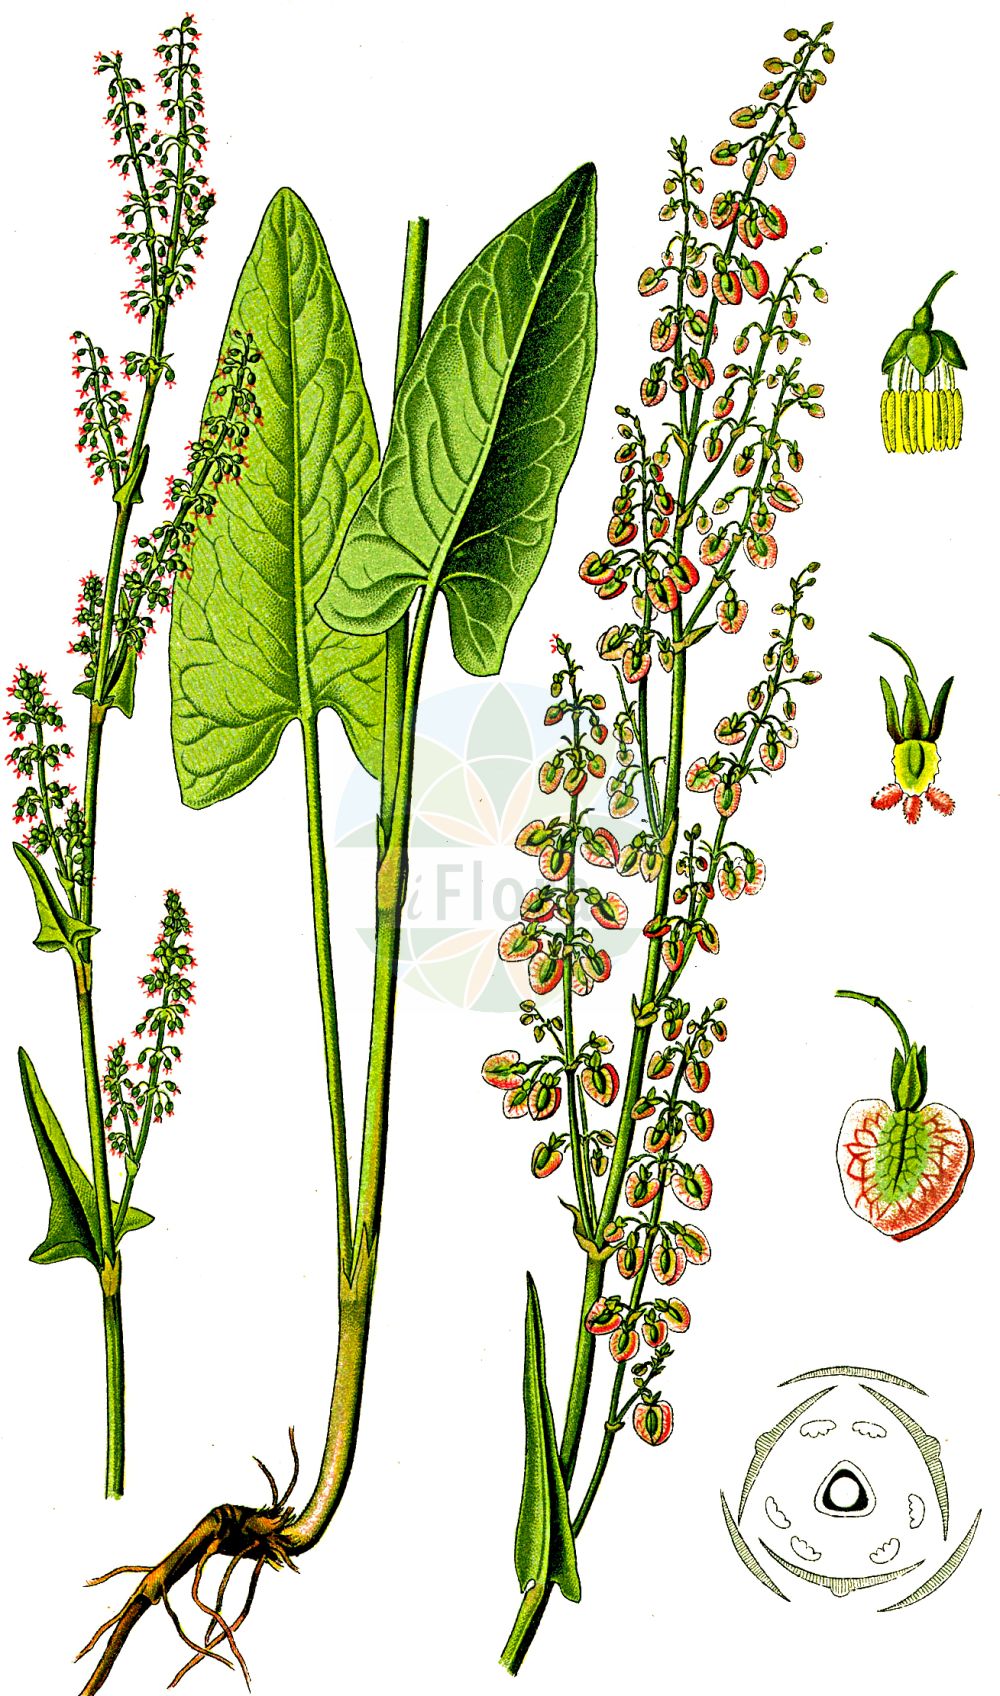 Historische Abbildung von Rumex acetosa (Großer Sauerampfer - Common Sorrel). Das Bild zeigt Blatt, Bluete, Frucht und Same. ---- Historical Drawing of Rumex acetosa (Großer Sauerampfer - Common Sorrel). The image is showing leaf, flower, fruit and seed.(Rumex acetosa,Großer Sauerampfer,Common Sorrel,Acetosa pratensis,Rumex acetosa,Rumex acetosa subsp. planellae,Grosser Sauerampfer,Gewoehnlicher Sauerampfer,Wiesen-Sauerampfer,Common Sorrel,Garden Sorrel,Green Sorrel,Sheep's Sorrel,Meadow Sorrel,Sour Dock,Rumex,Ampfer,Sorrel,Polygonaceae,Knöterichgewächse,Knotgrass family,Blatt,Bluete,Frucht,Same,leaf,flower,fruit,seed,Thomé (1885))